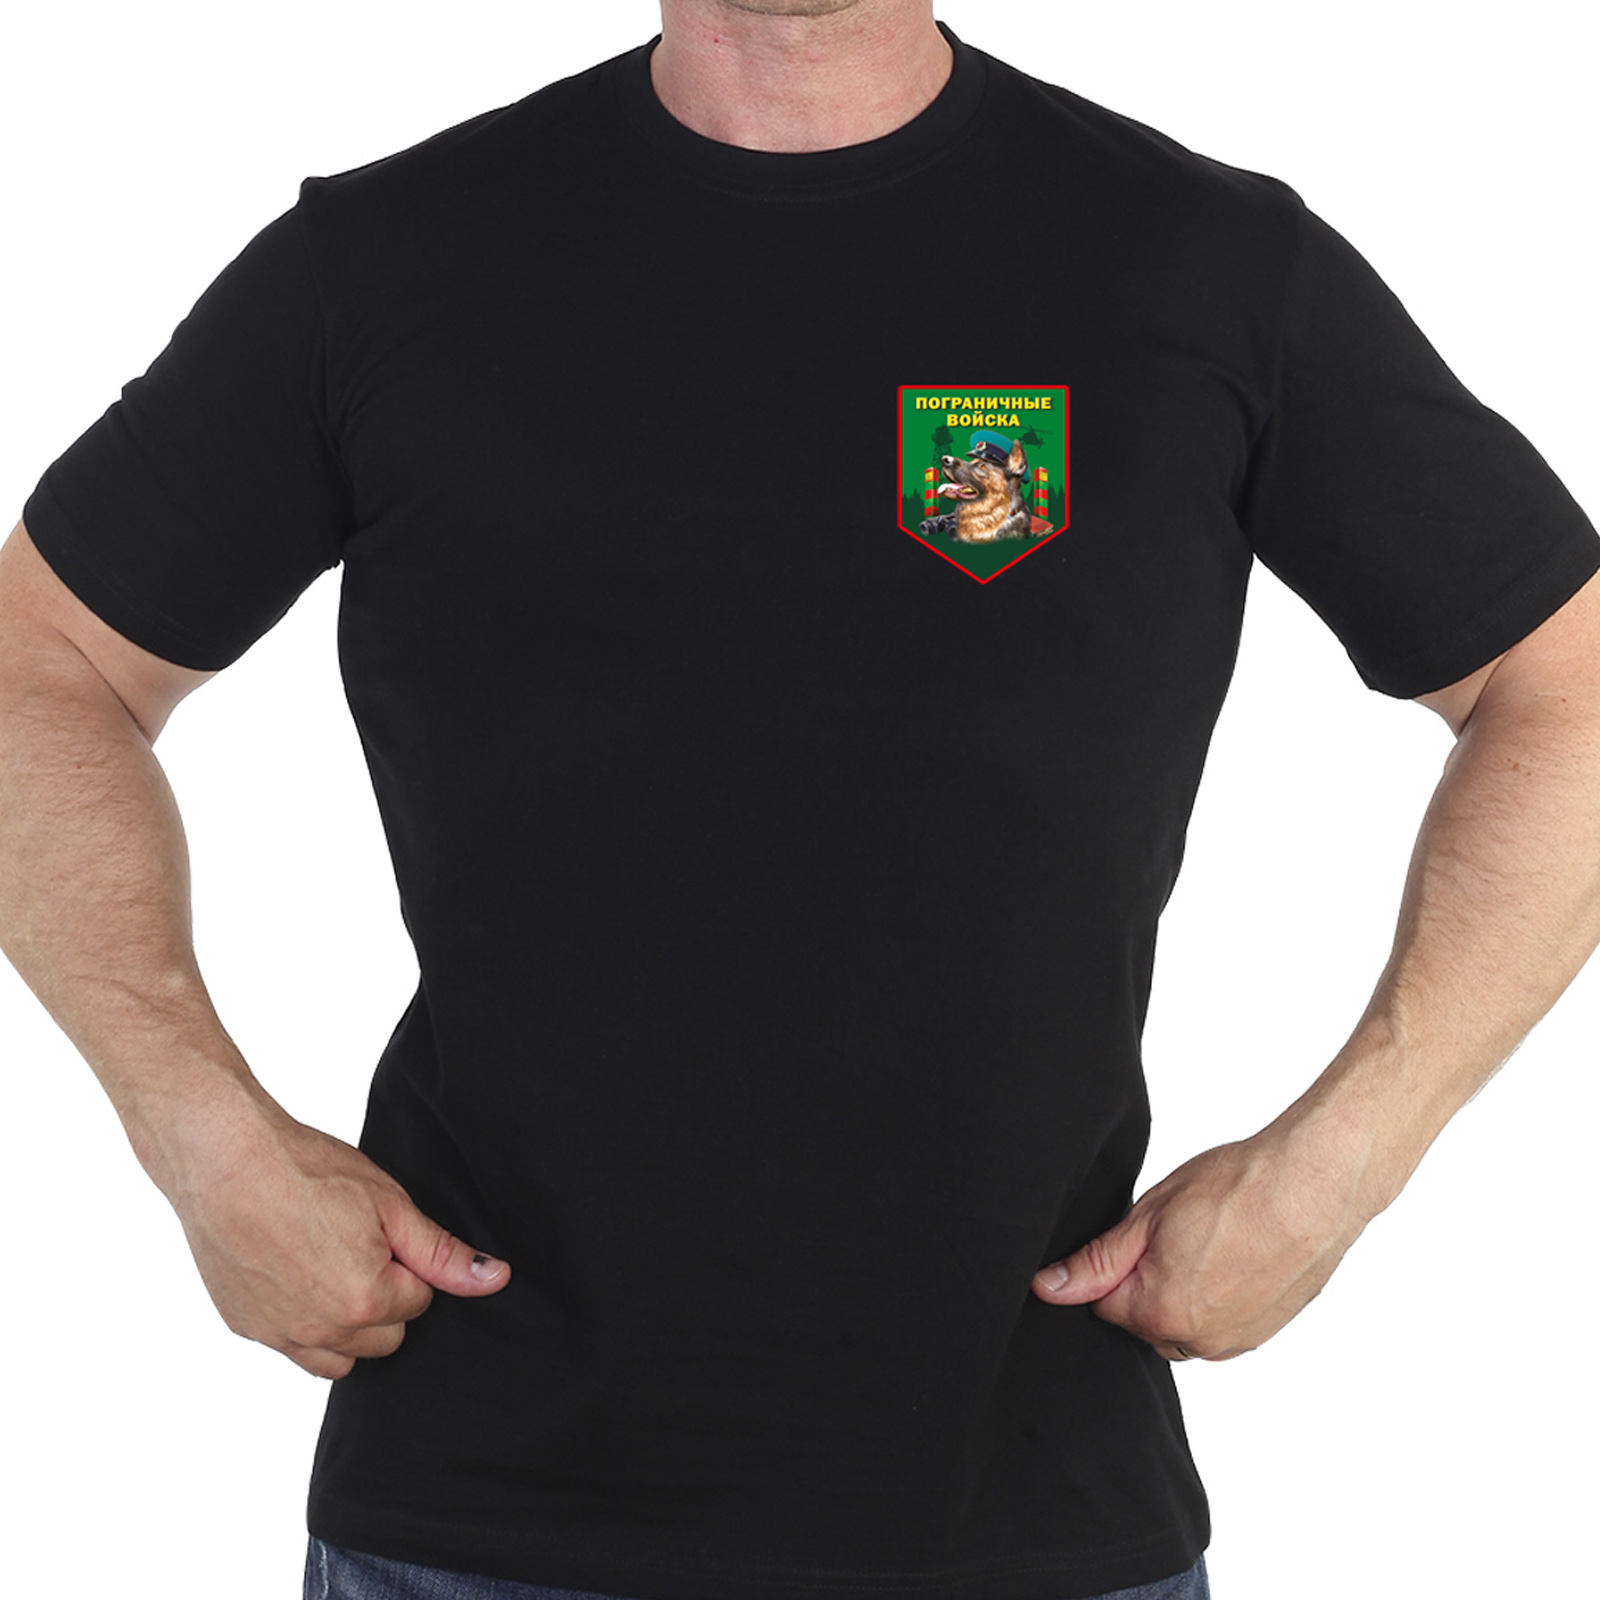 Чёрная футболка с термотрансфером пограничных войск